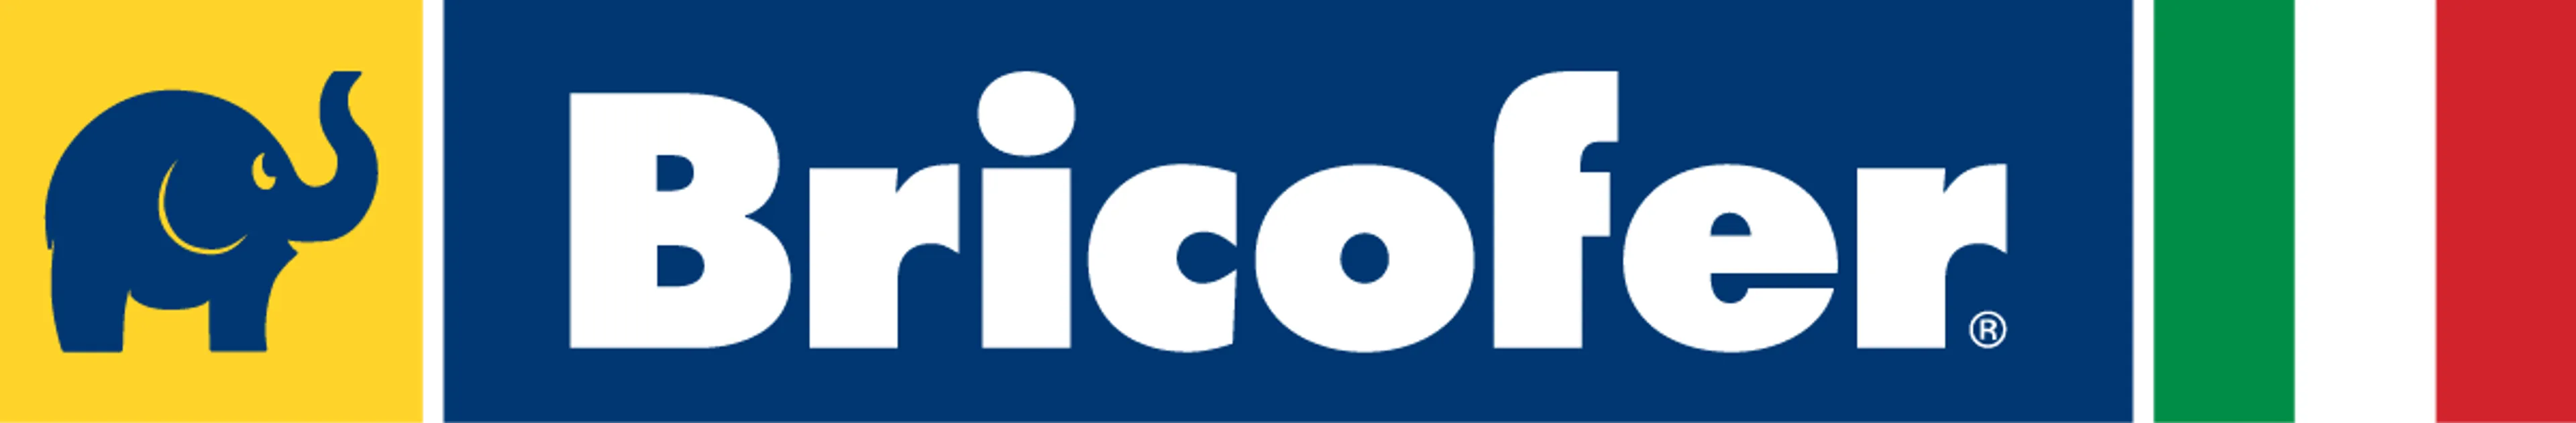 BRICOFER logo